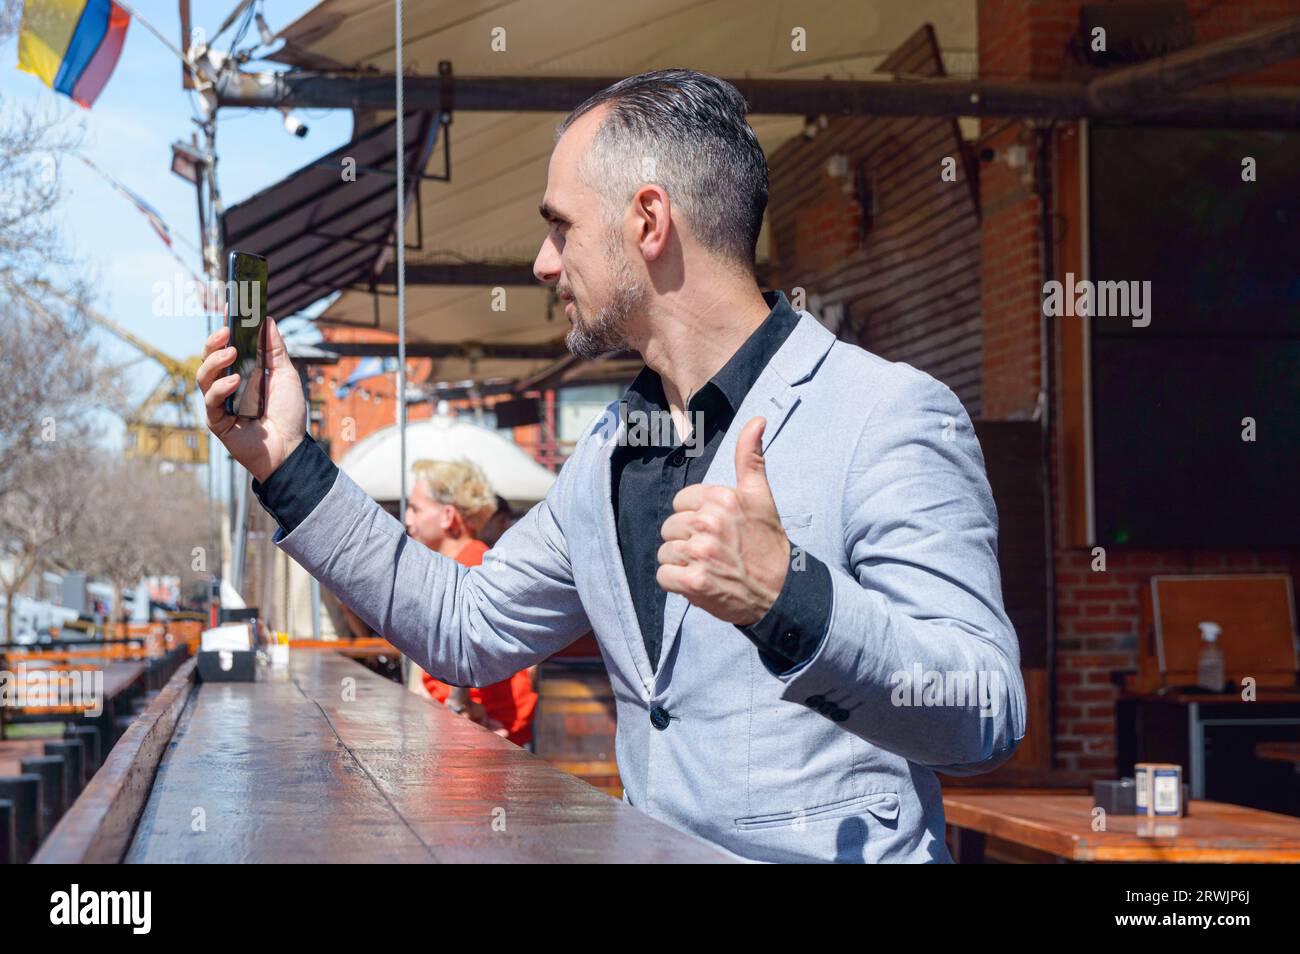 Homme d'affaires adulte caucasien assis à l'extérieur du restaurant sur un comptoir en bois, content de regarder son téléphone en attendant la serveuse Banque D'Images